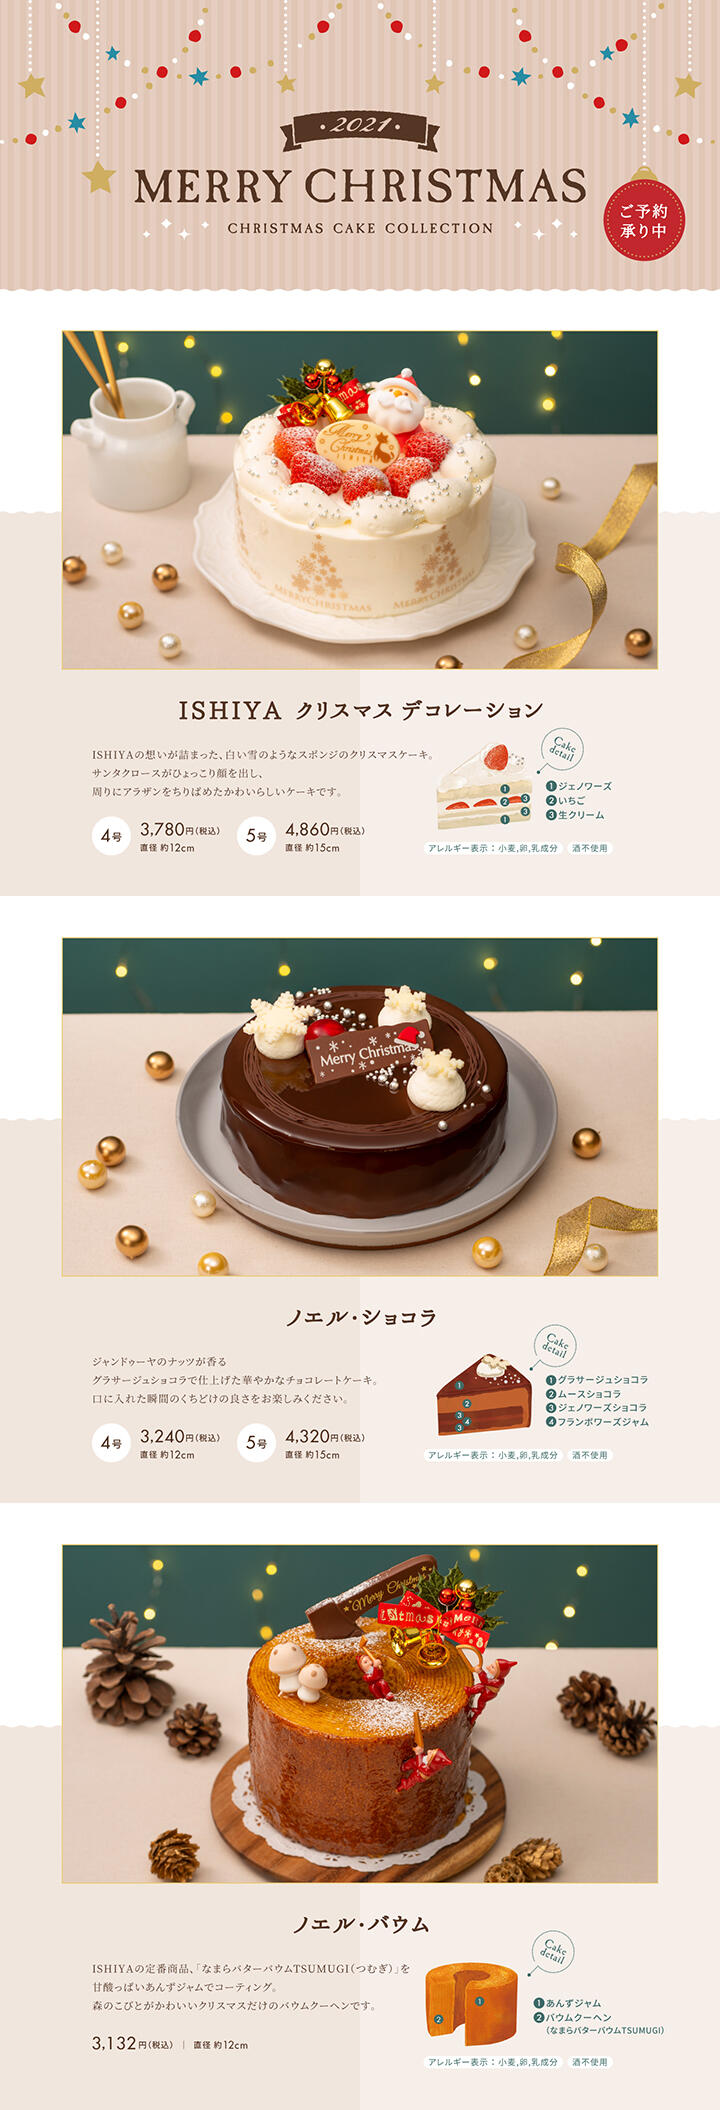 Ishiyaクリスマスケーキ21 お知らせ 石屋製菓 Ishiya しあわせをつくるお菓子